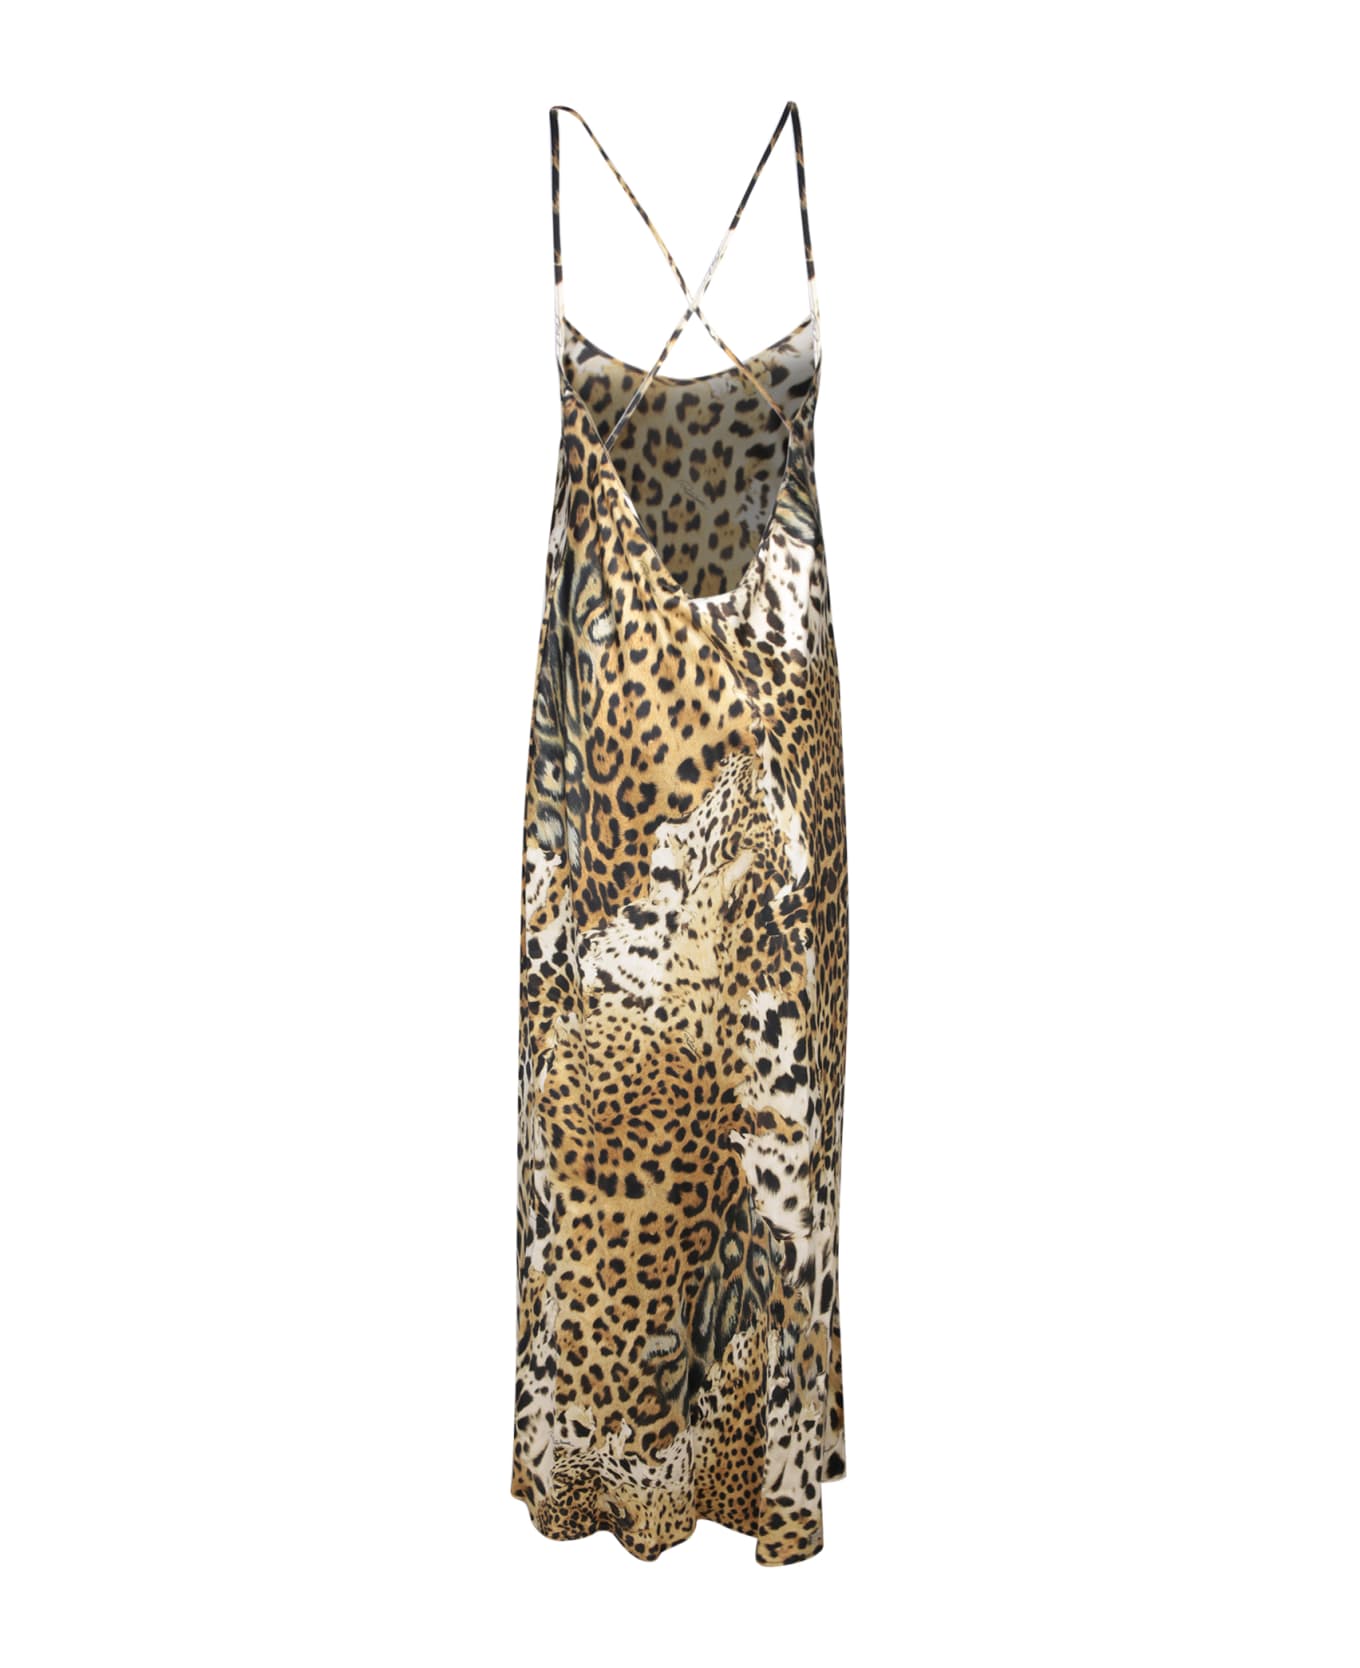 Roberto Cavalli Jaguar Skin Print Dress - Beige